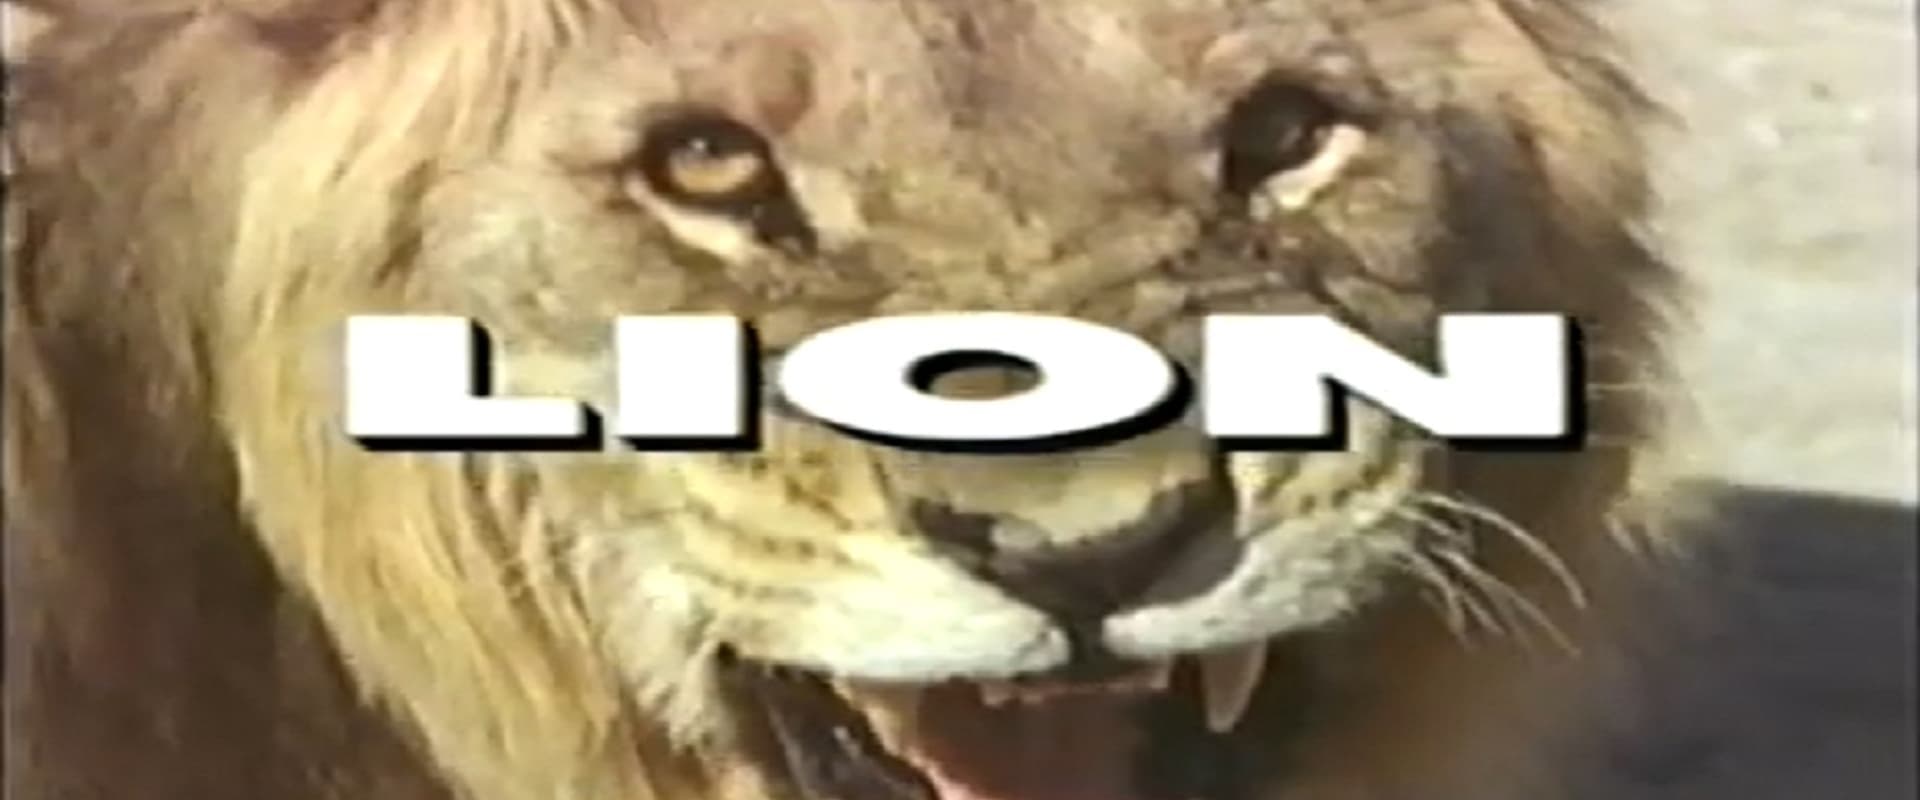 Predators of the Wild: Lion